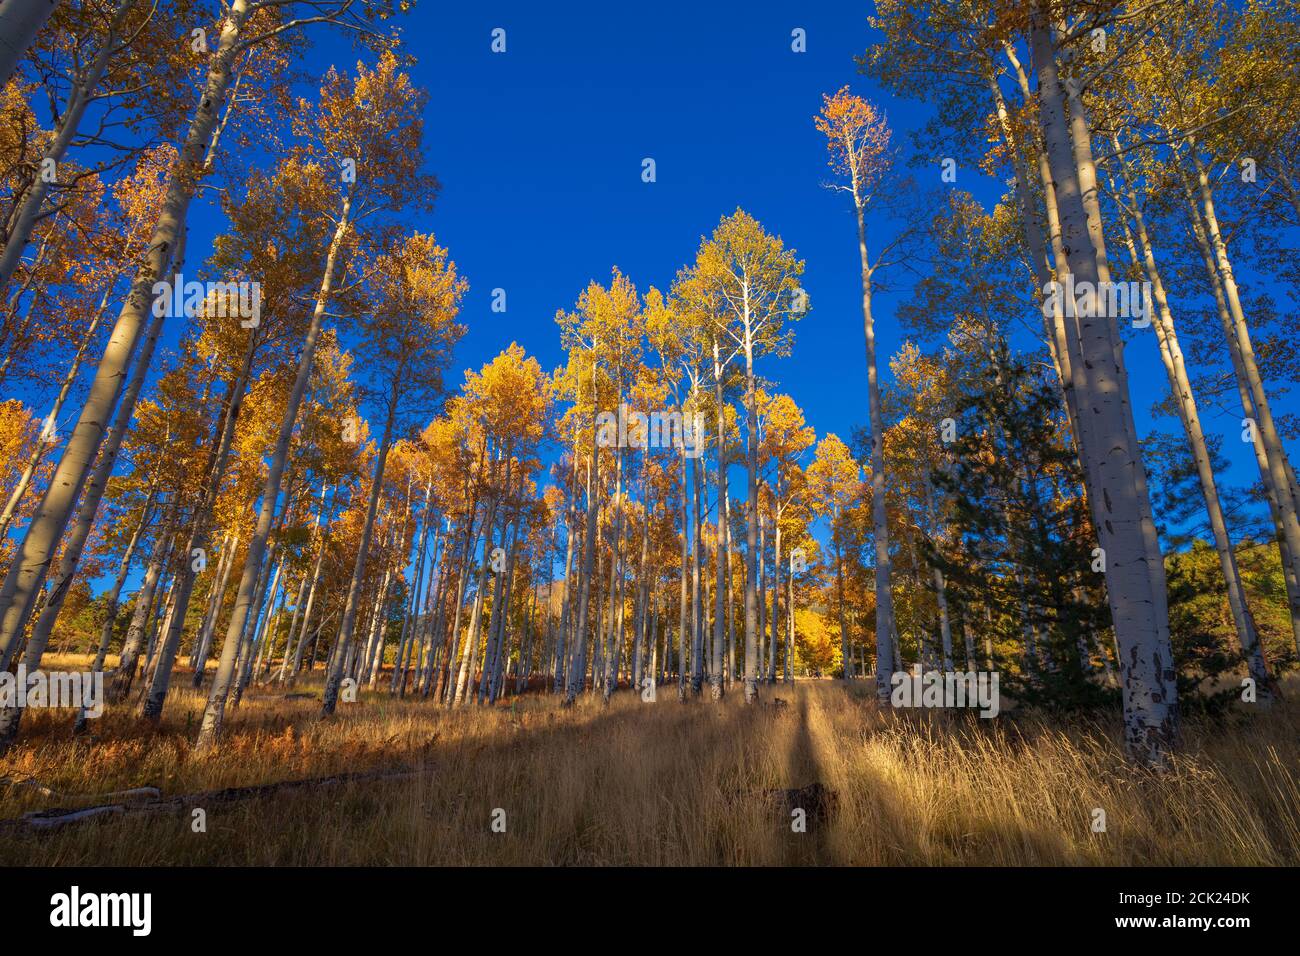 Aspen trees and blue sky near Flagstaff, Arizona Stock Photo